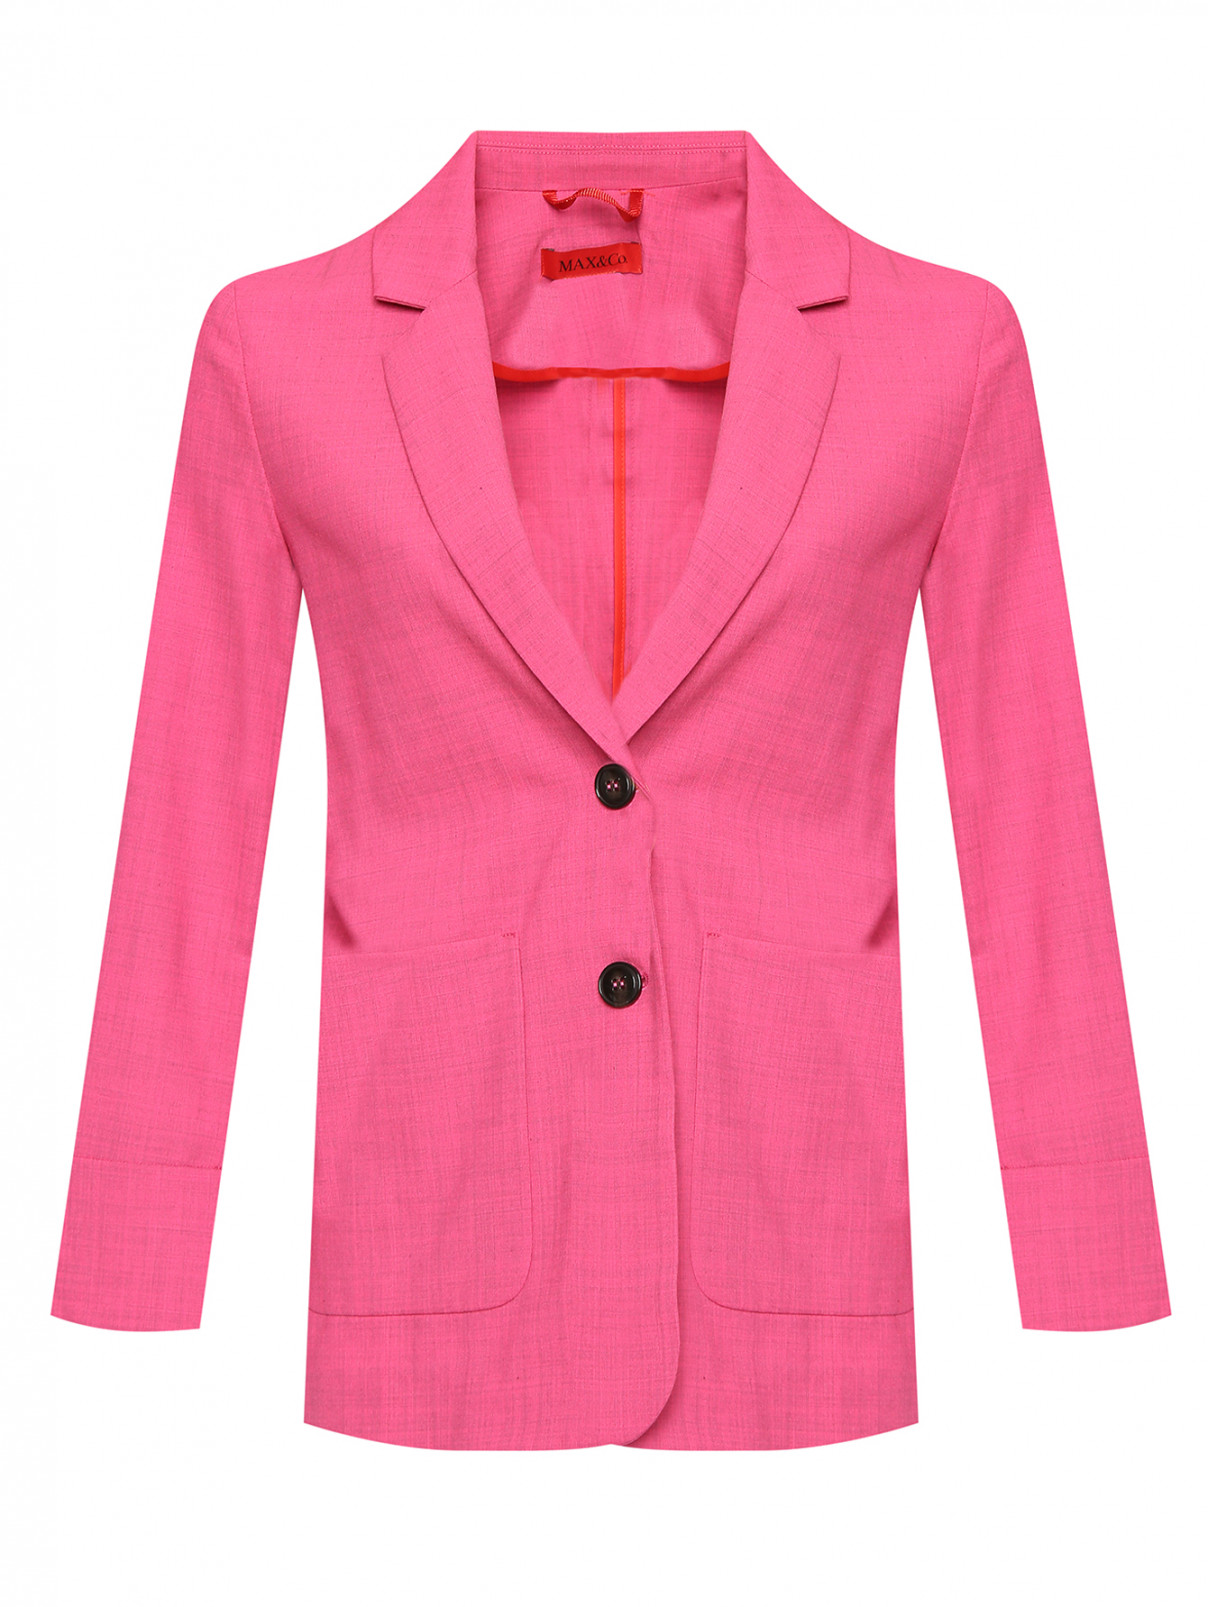 Однобортный жакет на пуговицах и накладными карманами Max&Co  –  Общий вид  – Цвет:  Розовый